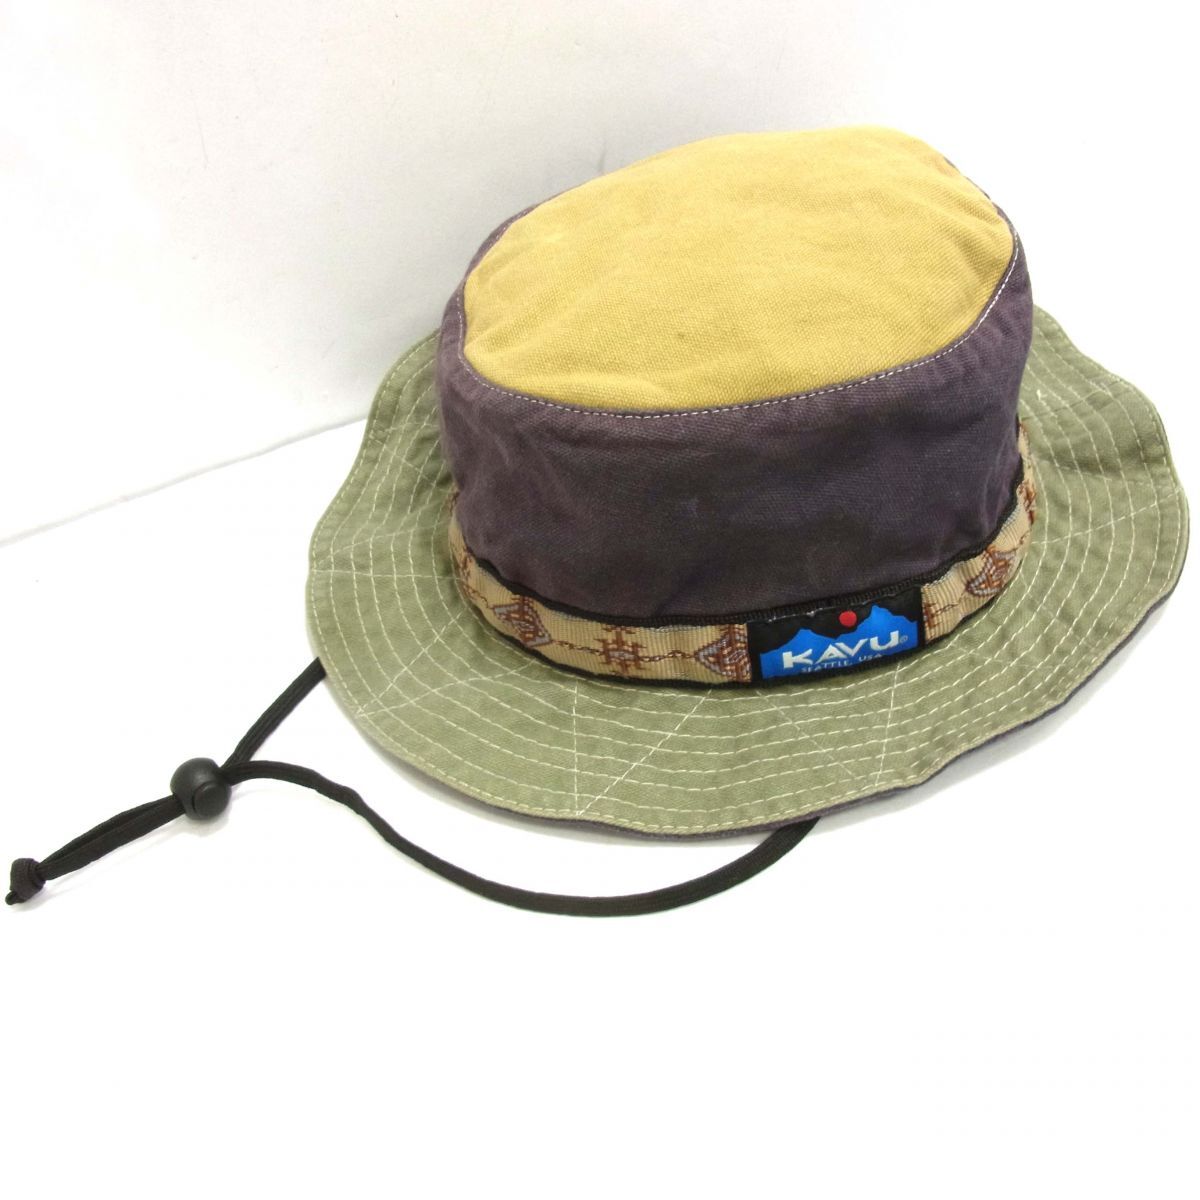 ◆KAVU カブー ストラップ バケットハット USA製 帽子 アウトドア キャンプ メンズ レディース_画像2